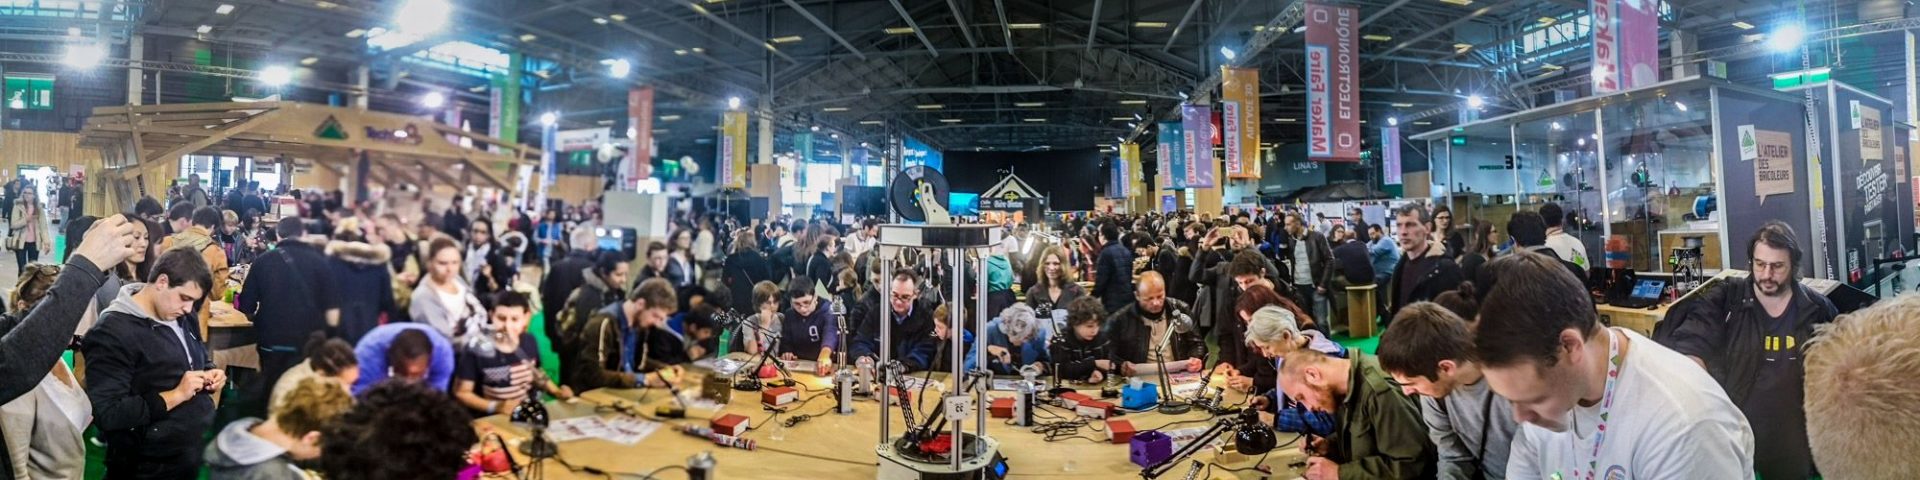 Maker Faire Rome 2018: dal 12 al 14 ottobre alla Fiera di Roma la sesta edizione